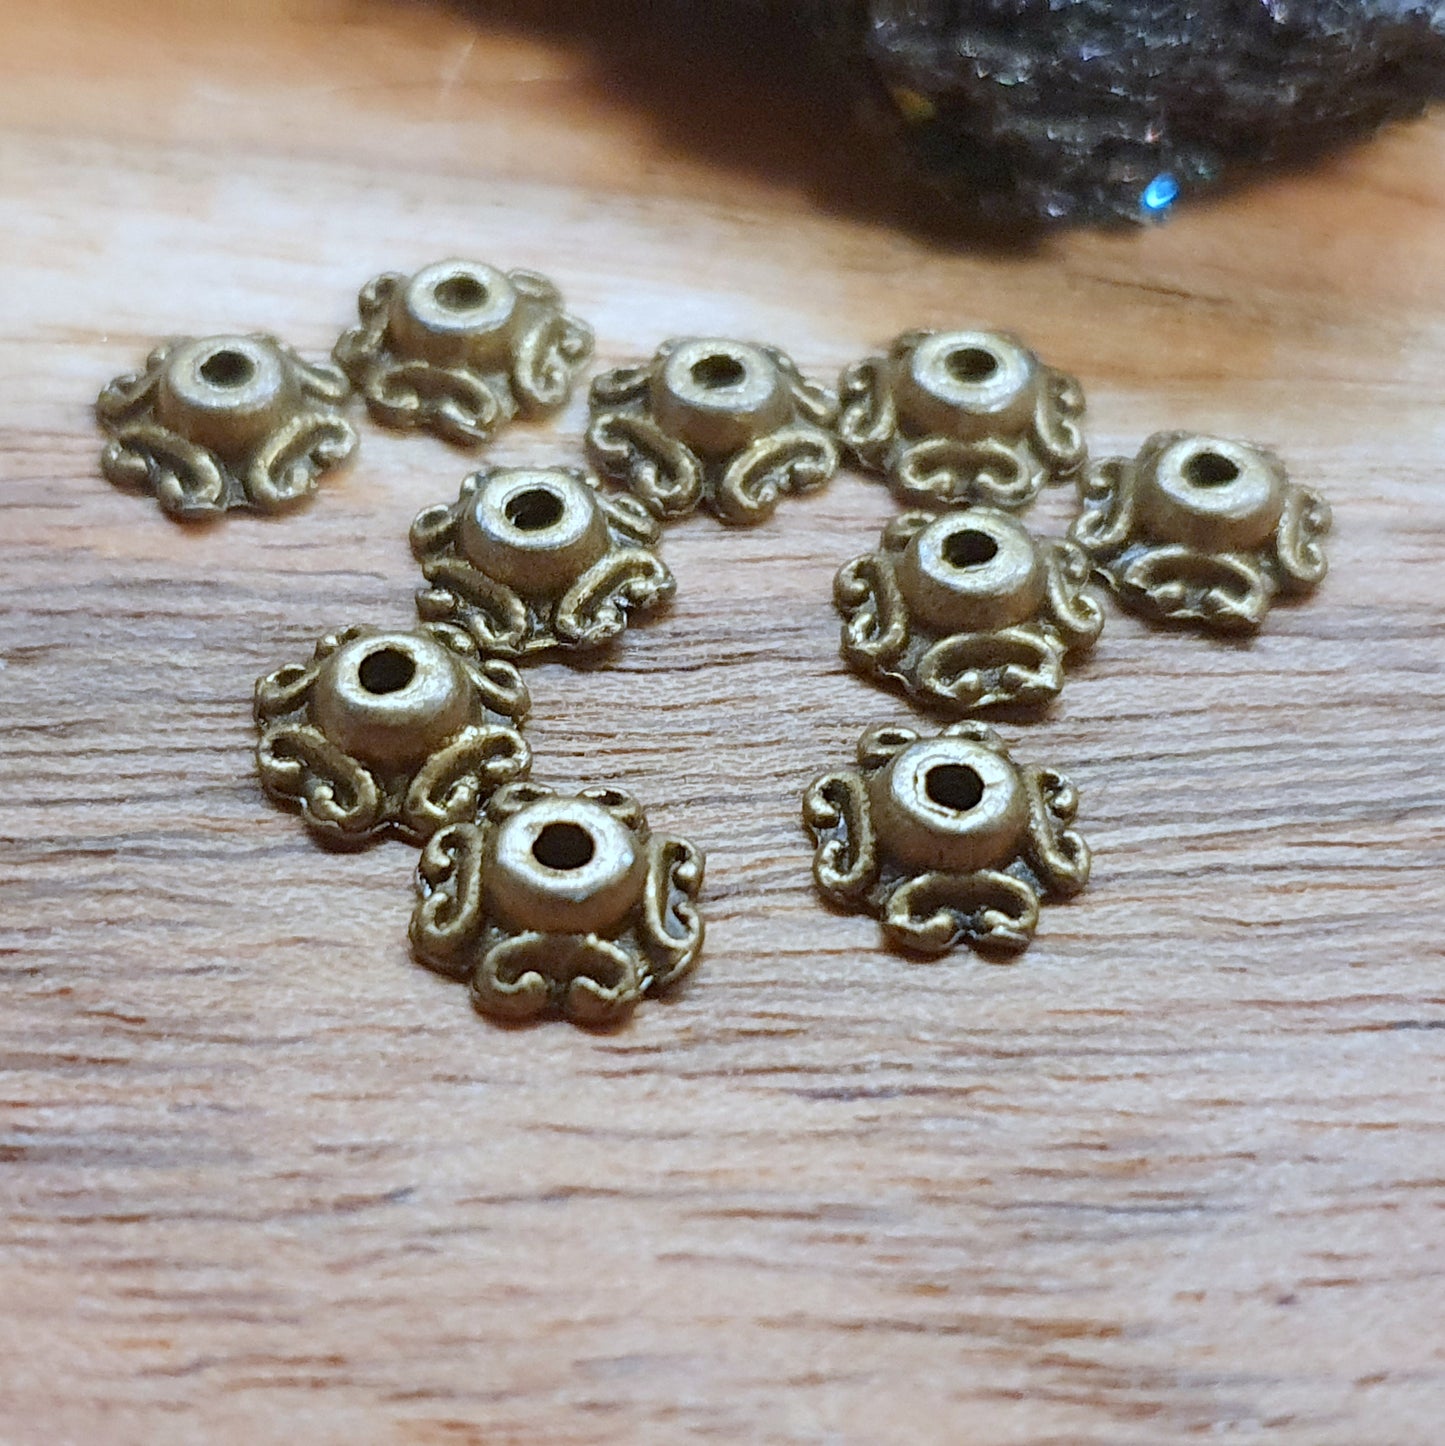 20 kleine Perlenkappen 7mm, antik bronzefarbig